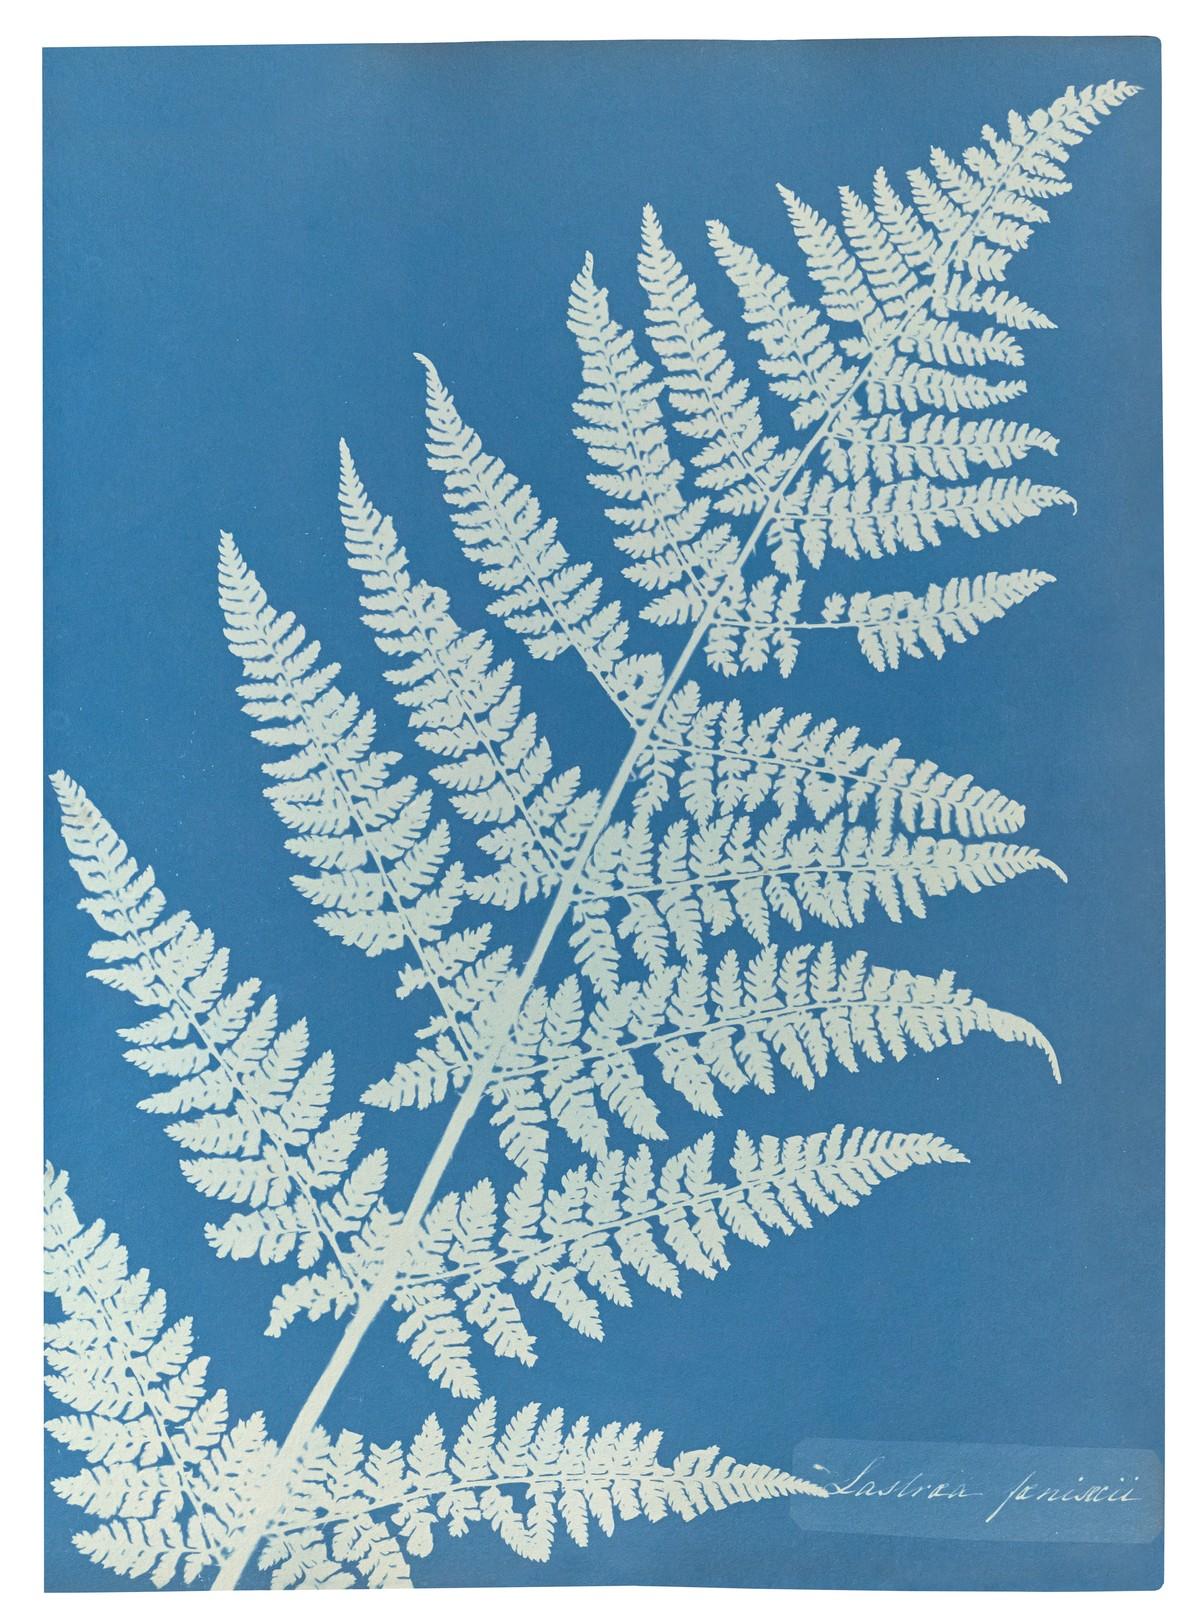 Die unnachahmlichen Cyanotypie-Fotogramme von Algen und Farnen, die Atkins anfertigte, bilden die ersten Bücher mit Fotografien. | Foto: TASCHEN / J. Paul Getty Museum, Los Angeles